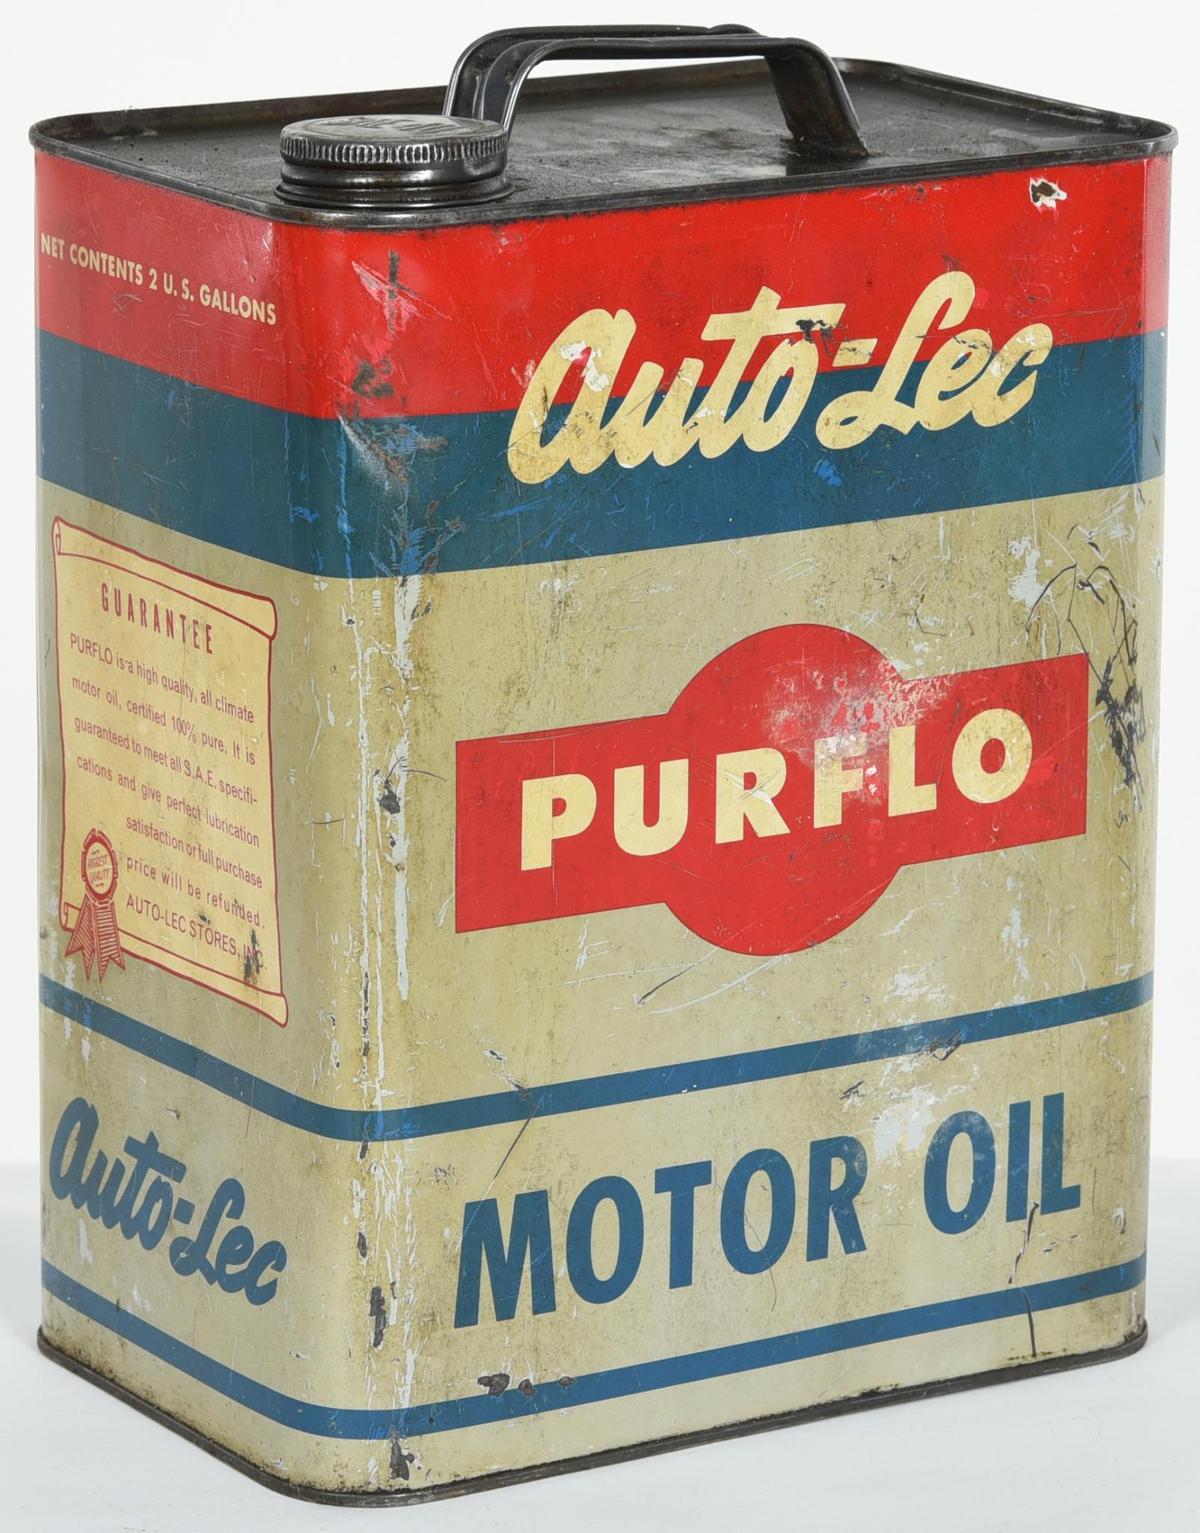 Auto-Lee Purflo motor Oil 2 Gallon Can